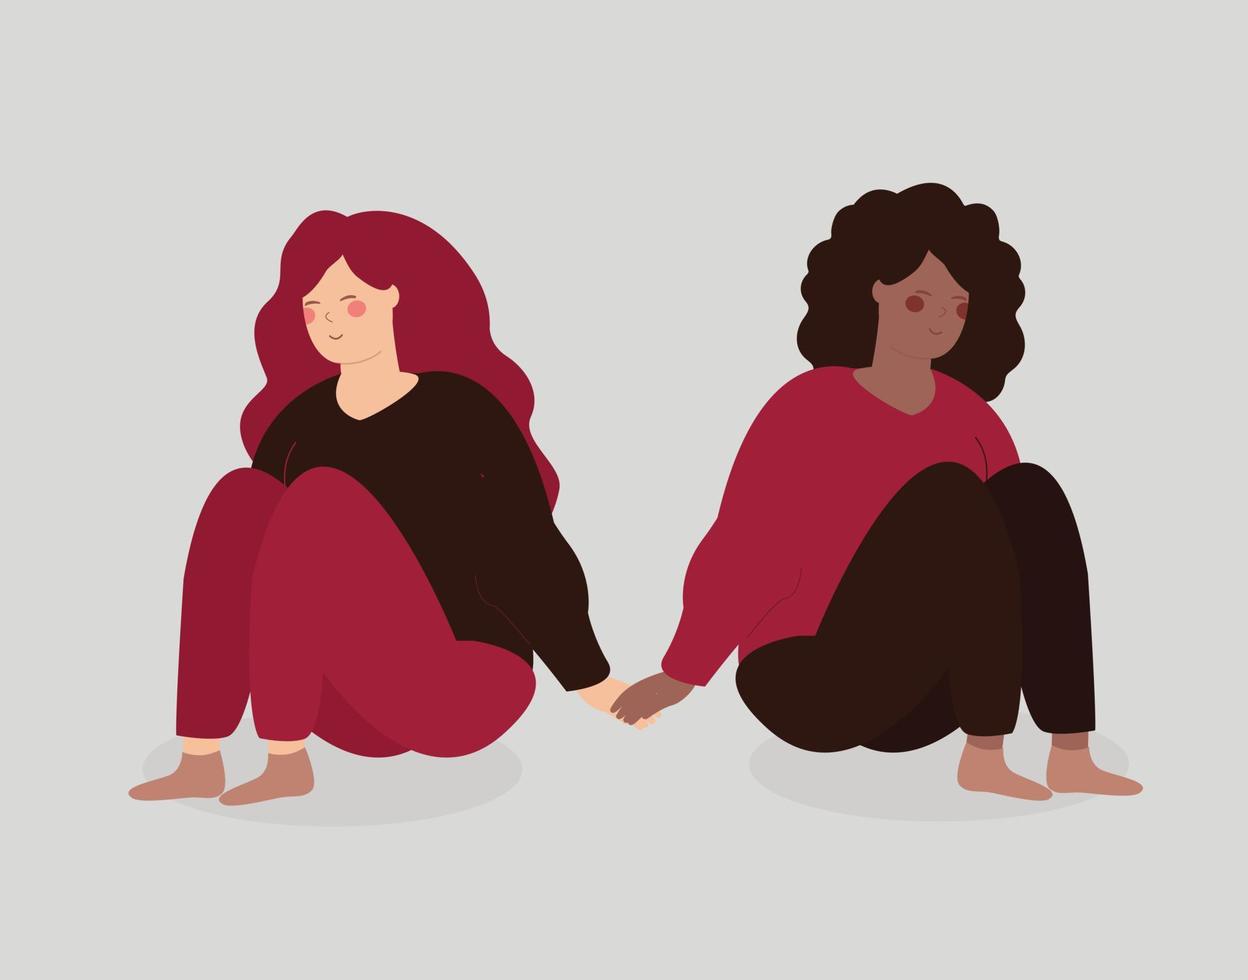 dos mujeres activistas se sientan juntas y se apoyan mutuamente. chicas feministas de diferentes etnias toman los brazos y se ven felices. concepto de amistad, hermandad y solidaridad. ilustración vectorial vector